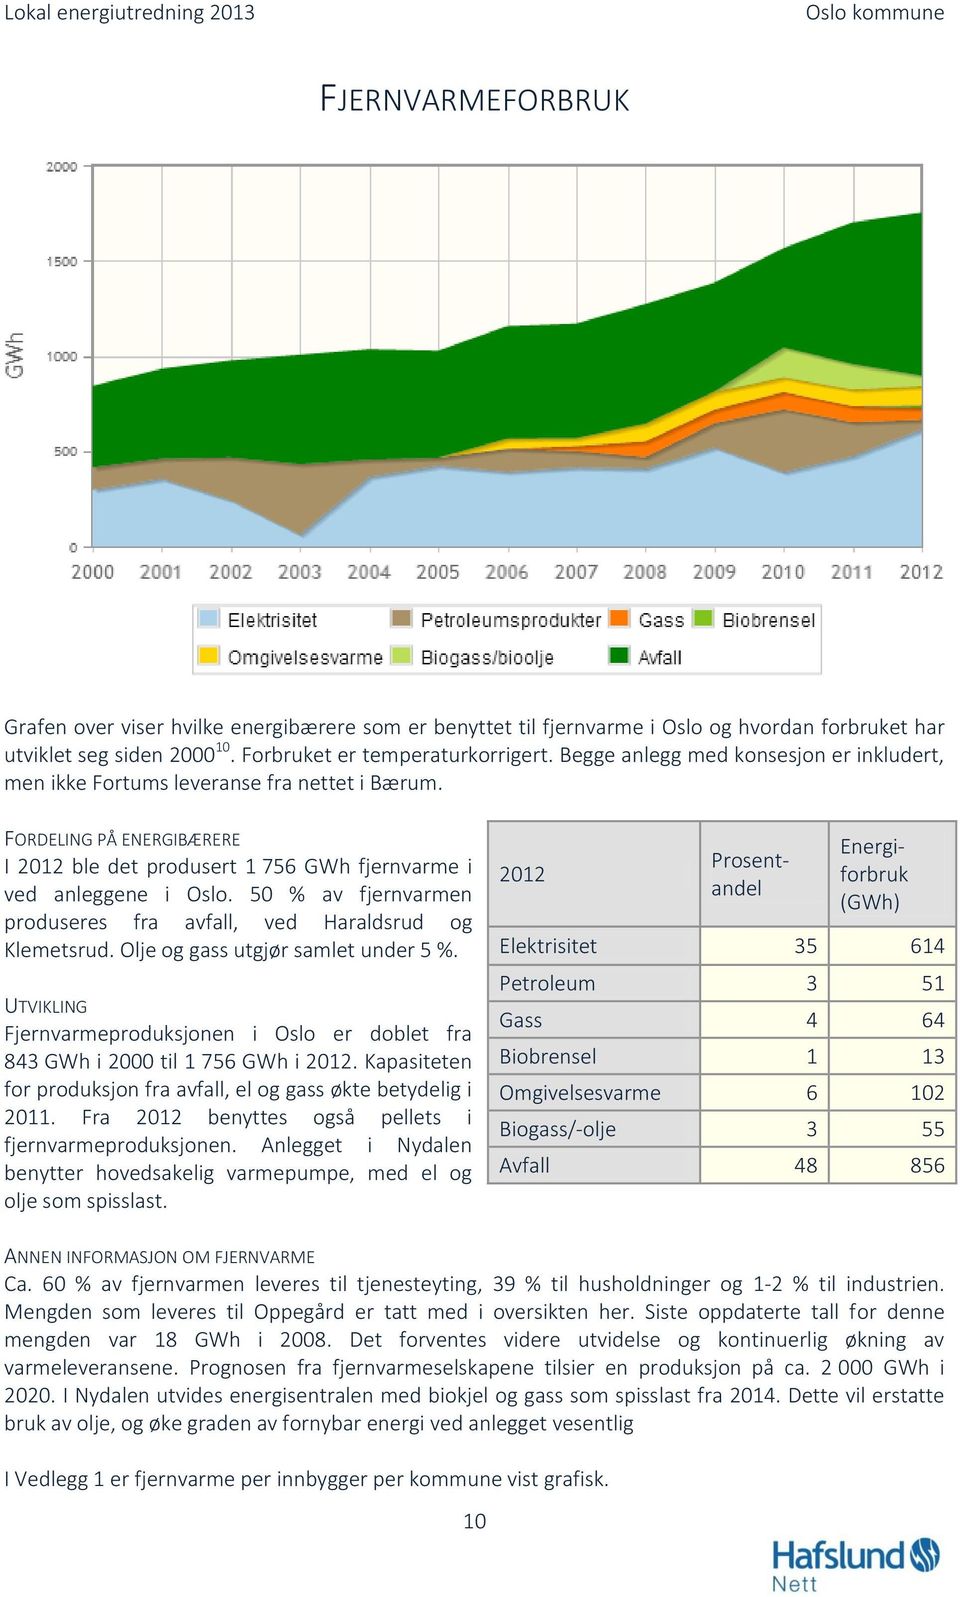 50 % av fjernvarmen produseres fra avfall, ved Haraldsrud og Klemetsrud. Olje og gass utgjør samlet under 5 %.